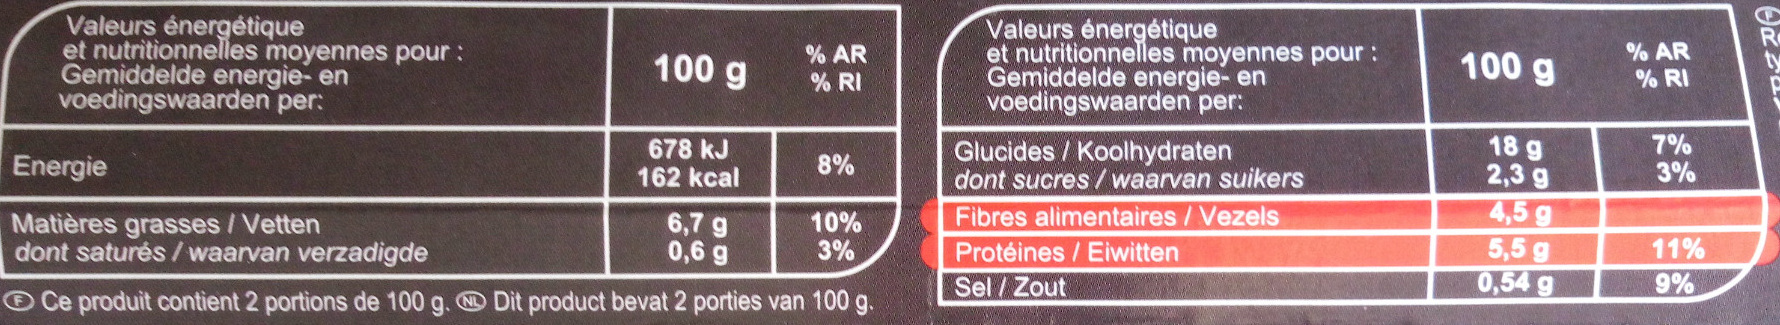 GALETTES Quinoa, boulgour, lentilles corail - Informació nutricional - fr